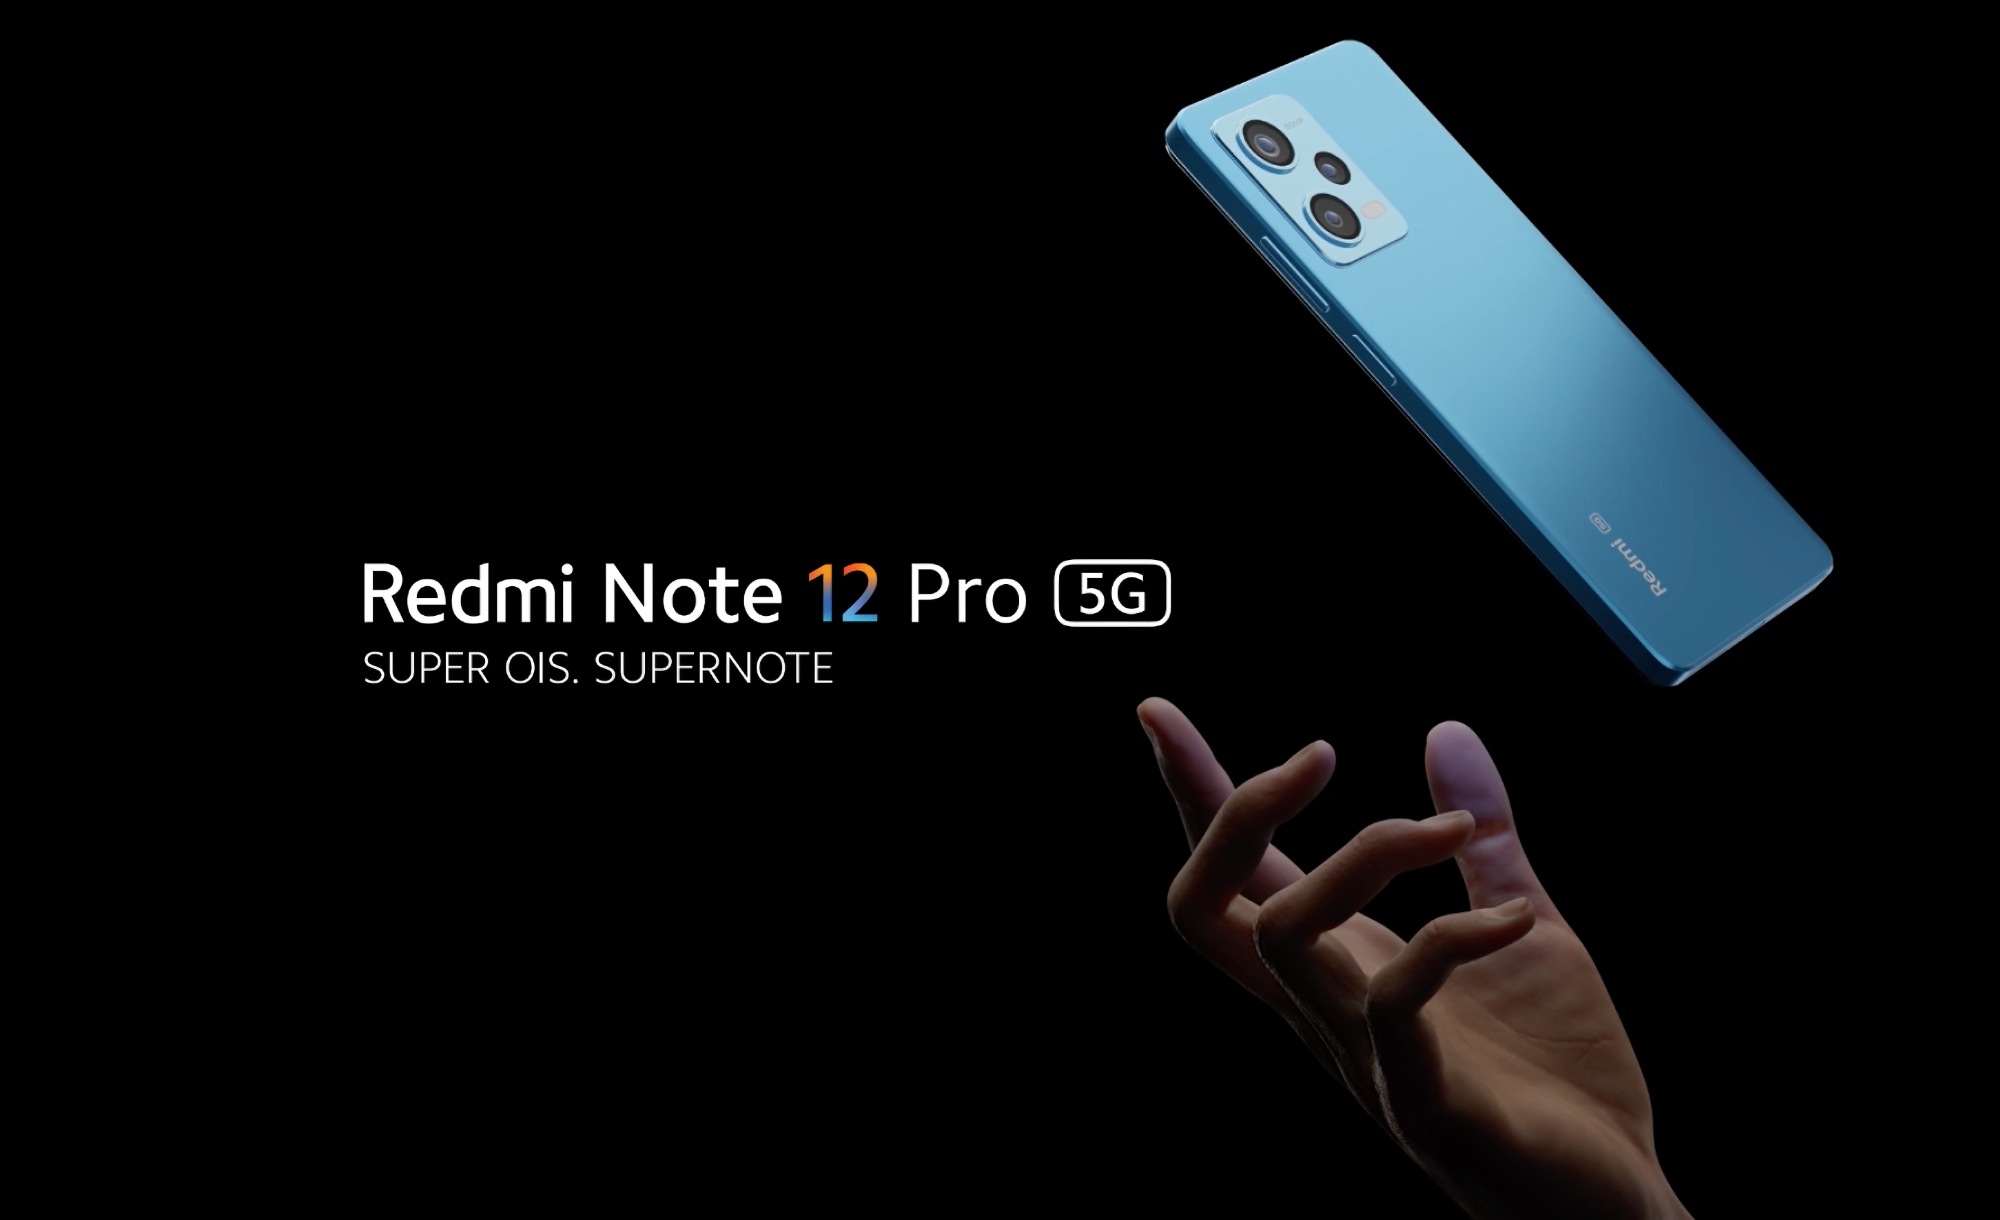 Redmi Note 12 Pro mit MediaTek Dimensity 1080 Chip, 50 MP Sony IMX766 Kamera und 67W Schnellladung außerhalb Chinas enthüllt